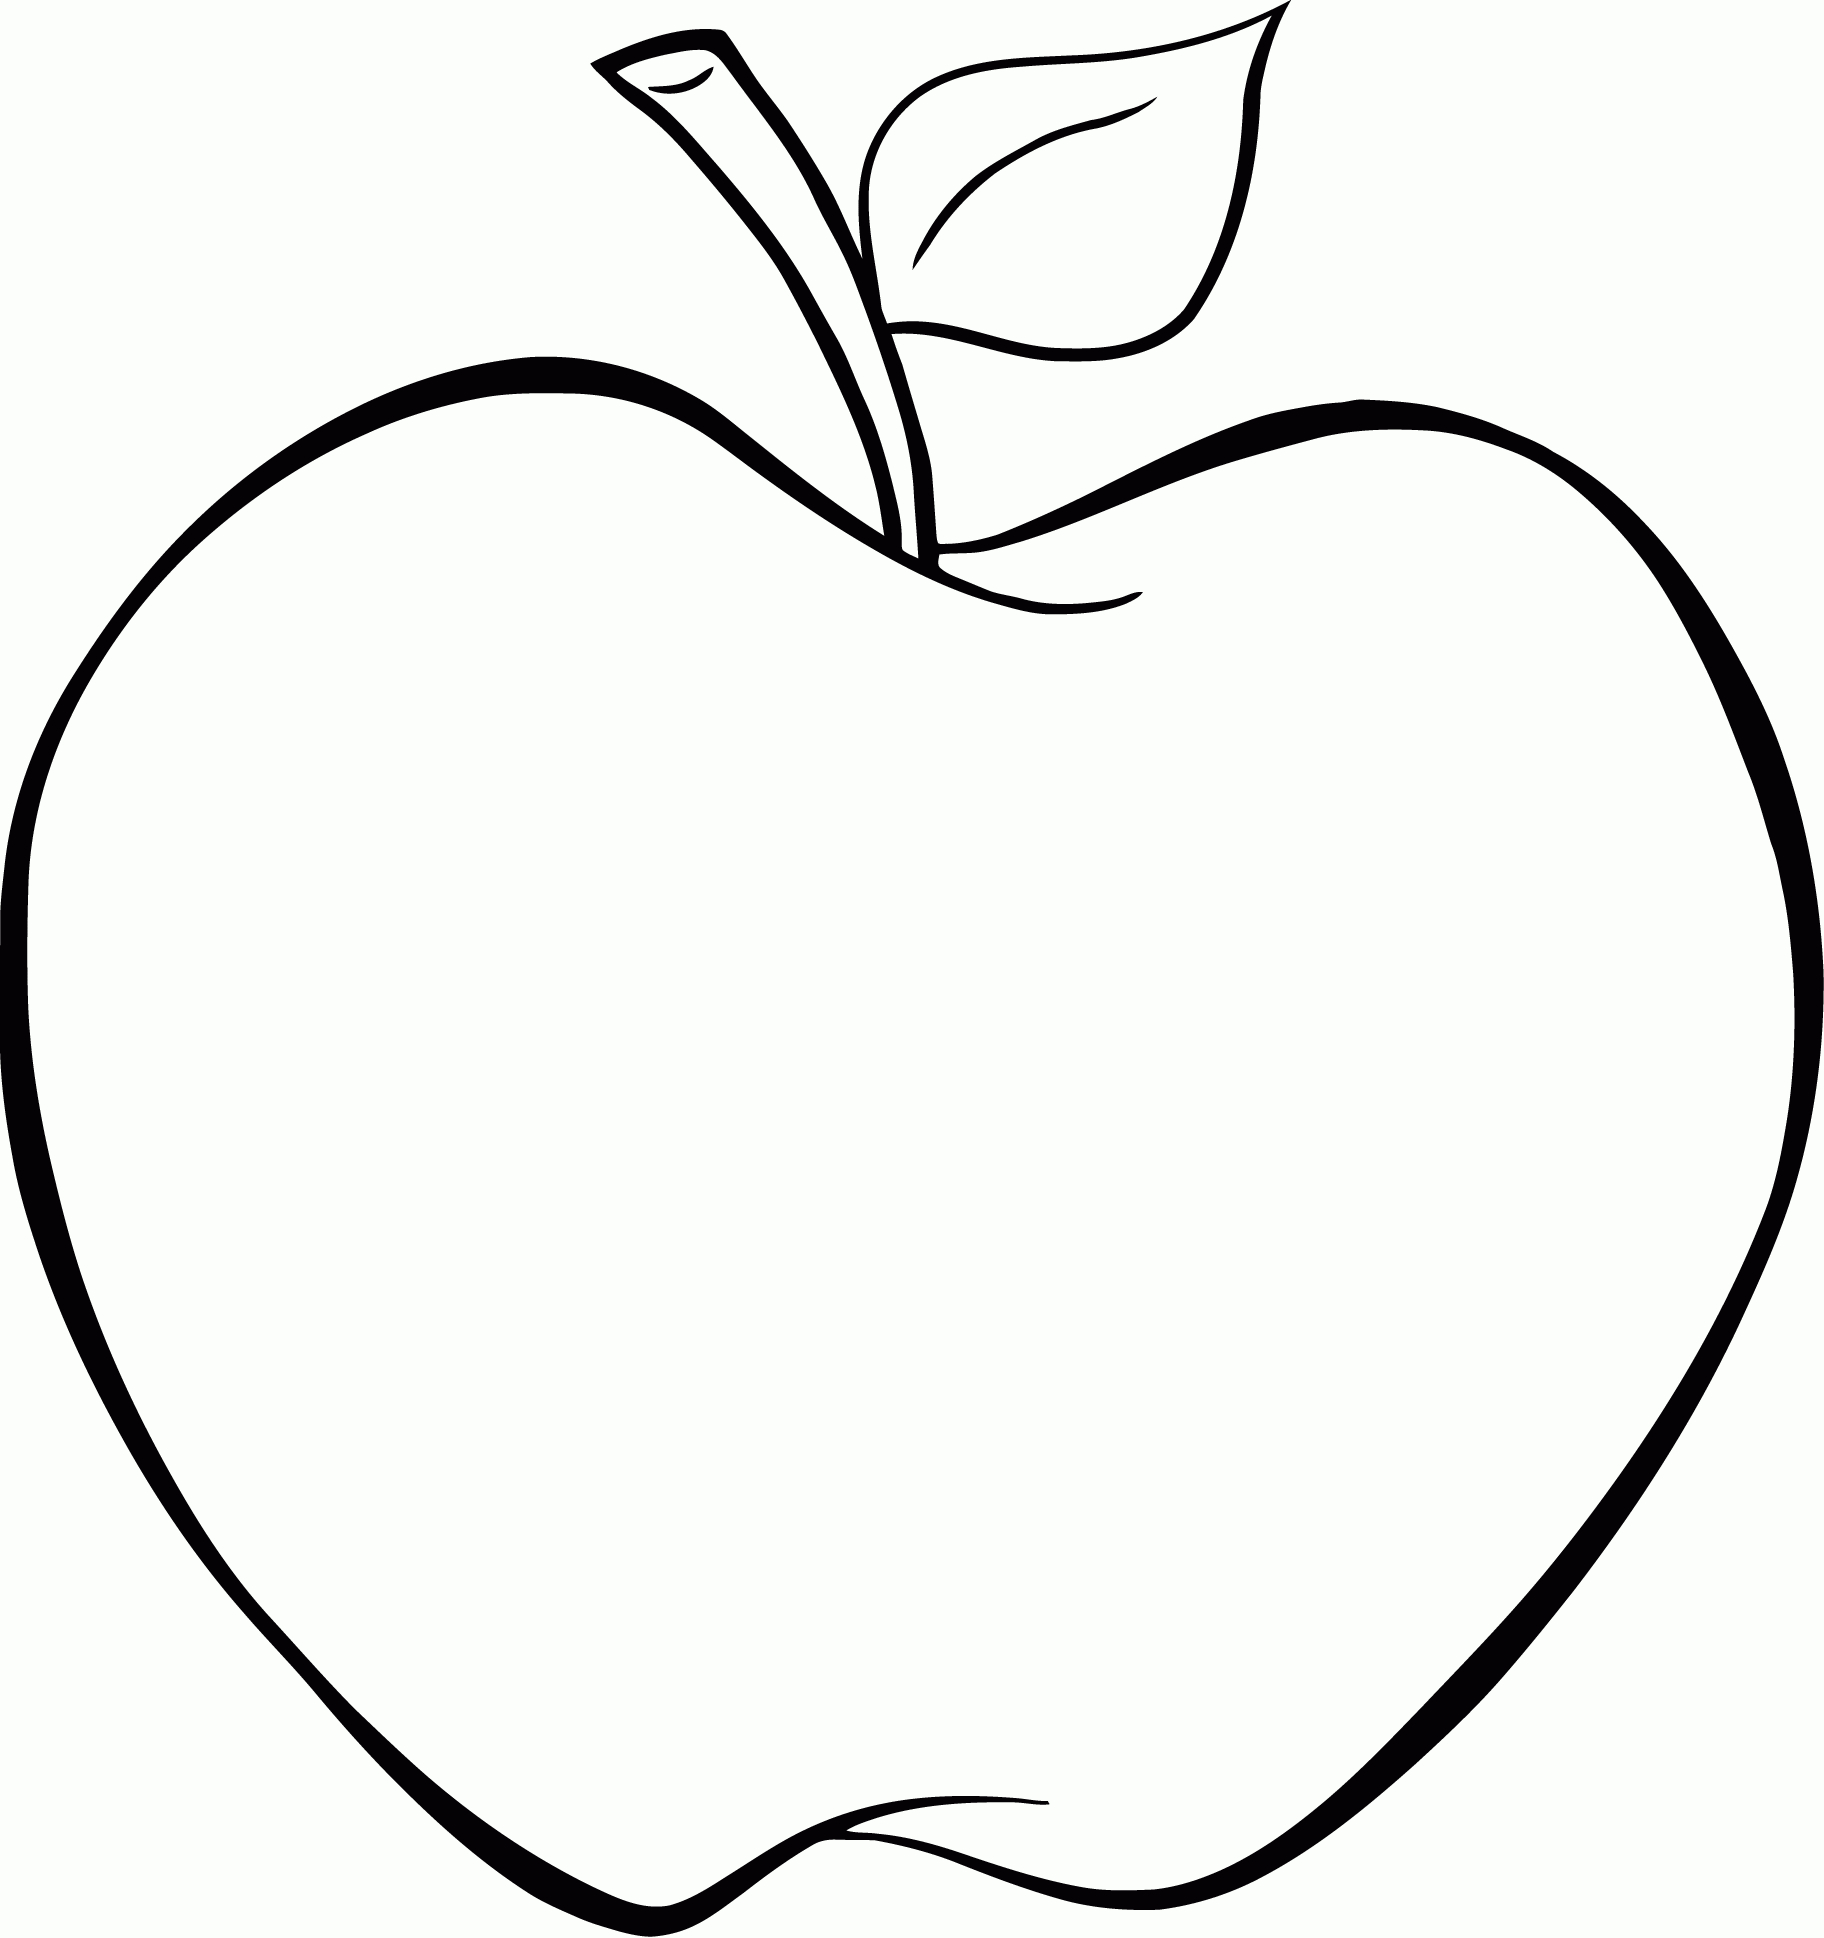 Ausmalbilder Apfel 01 | Malvorlagen Gratis, Malvorlagen bestimmt für Apfel Ausmalbilder